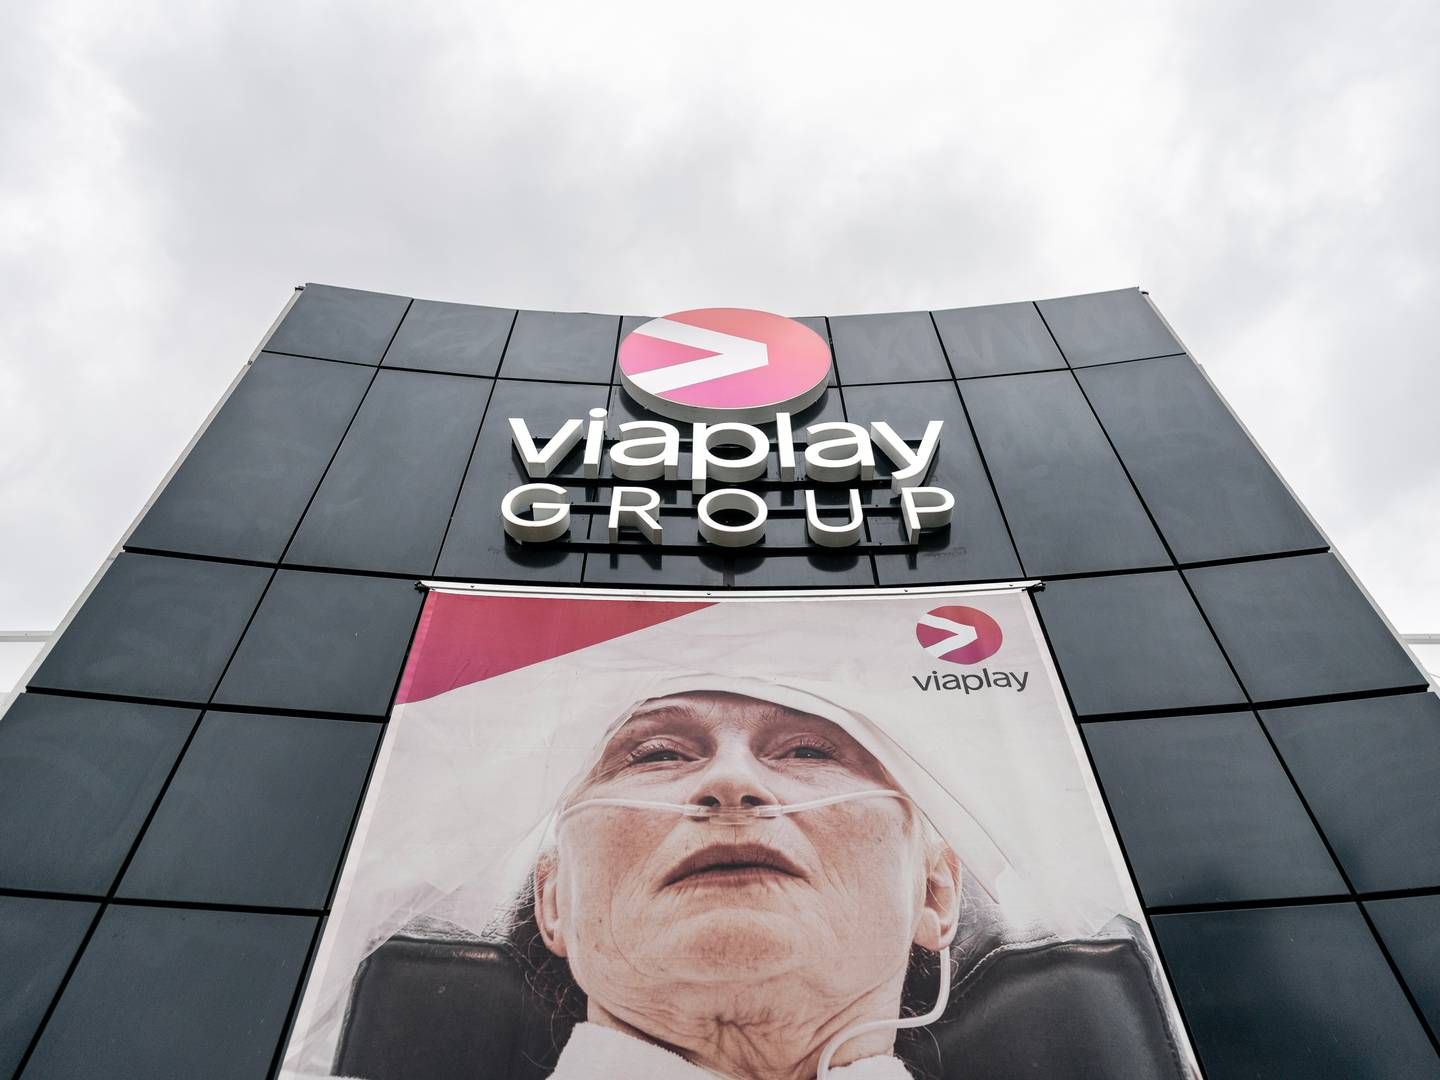 Der er stadig langt til overskud i den nordiske mediekoncern Viaplay Group. Det viser selskabets netop offentliggjorte halvårsregnskab. | Foto: Rasmus Flindt Pedersen